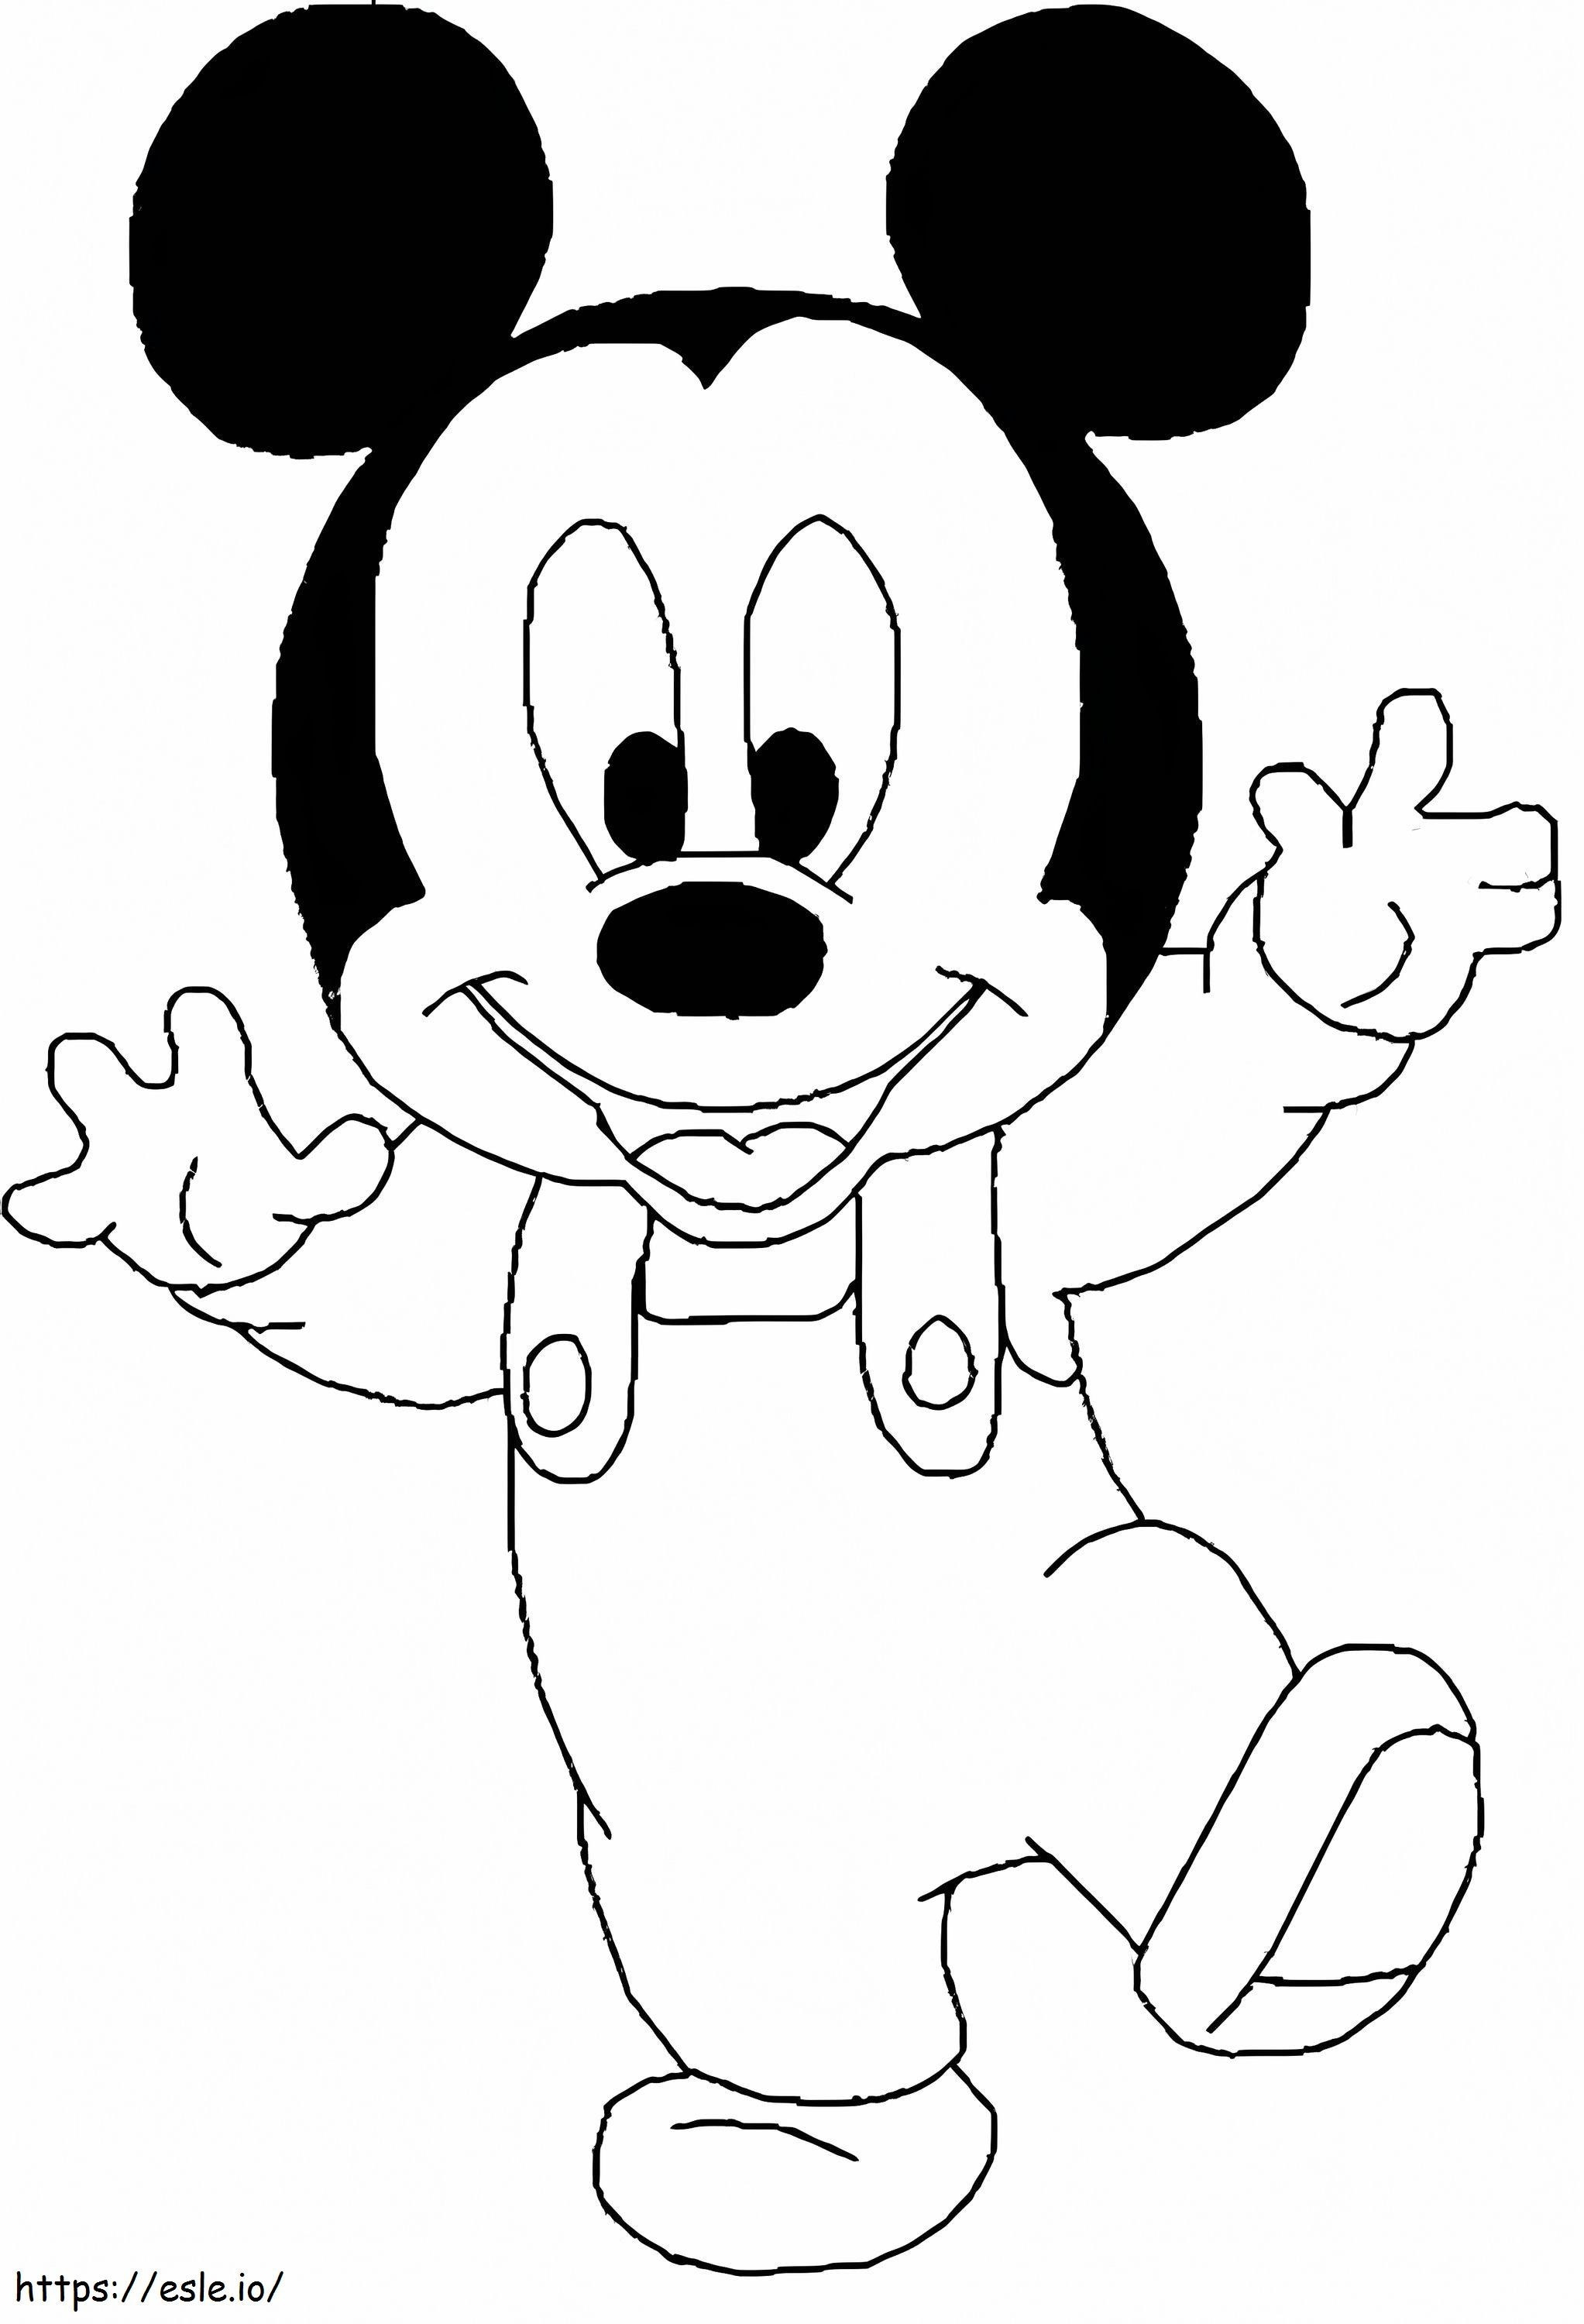 Coloriage Mignon bébé Mickey Mouse à imprimer dessin